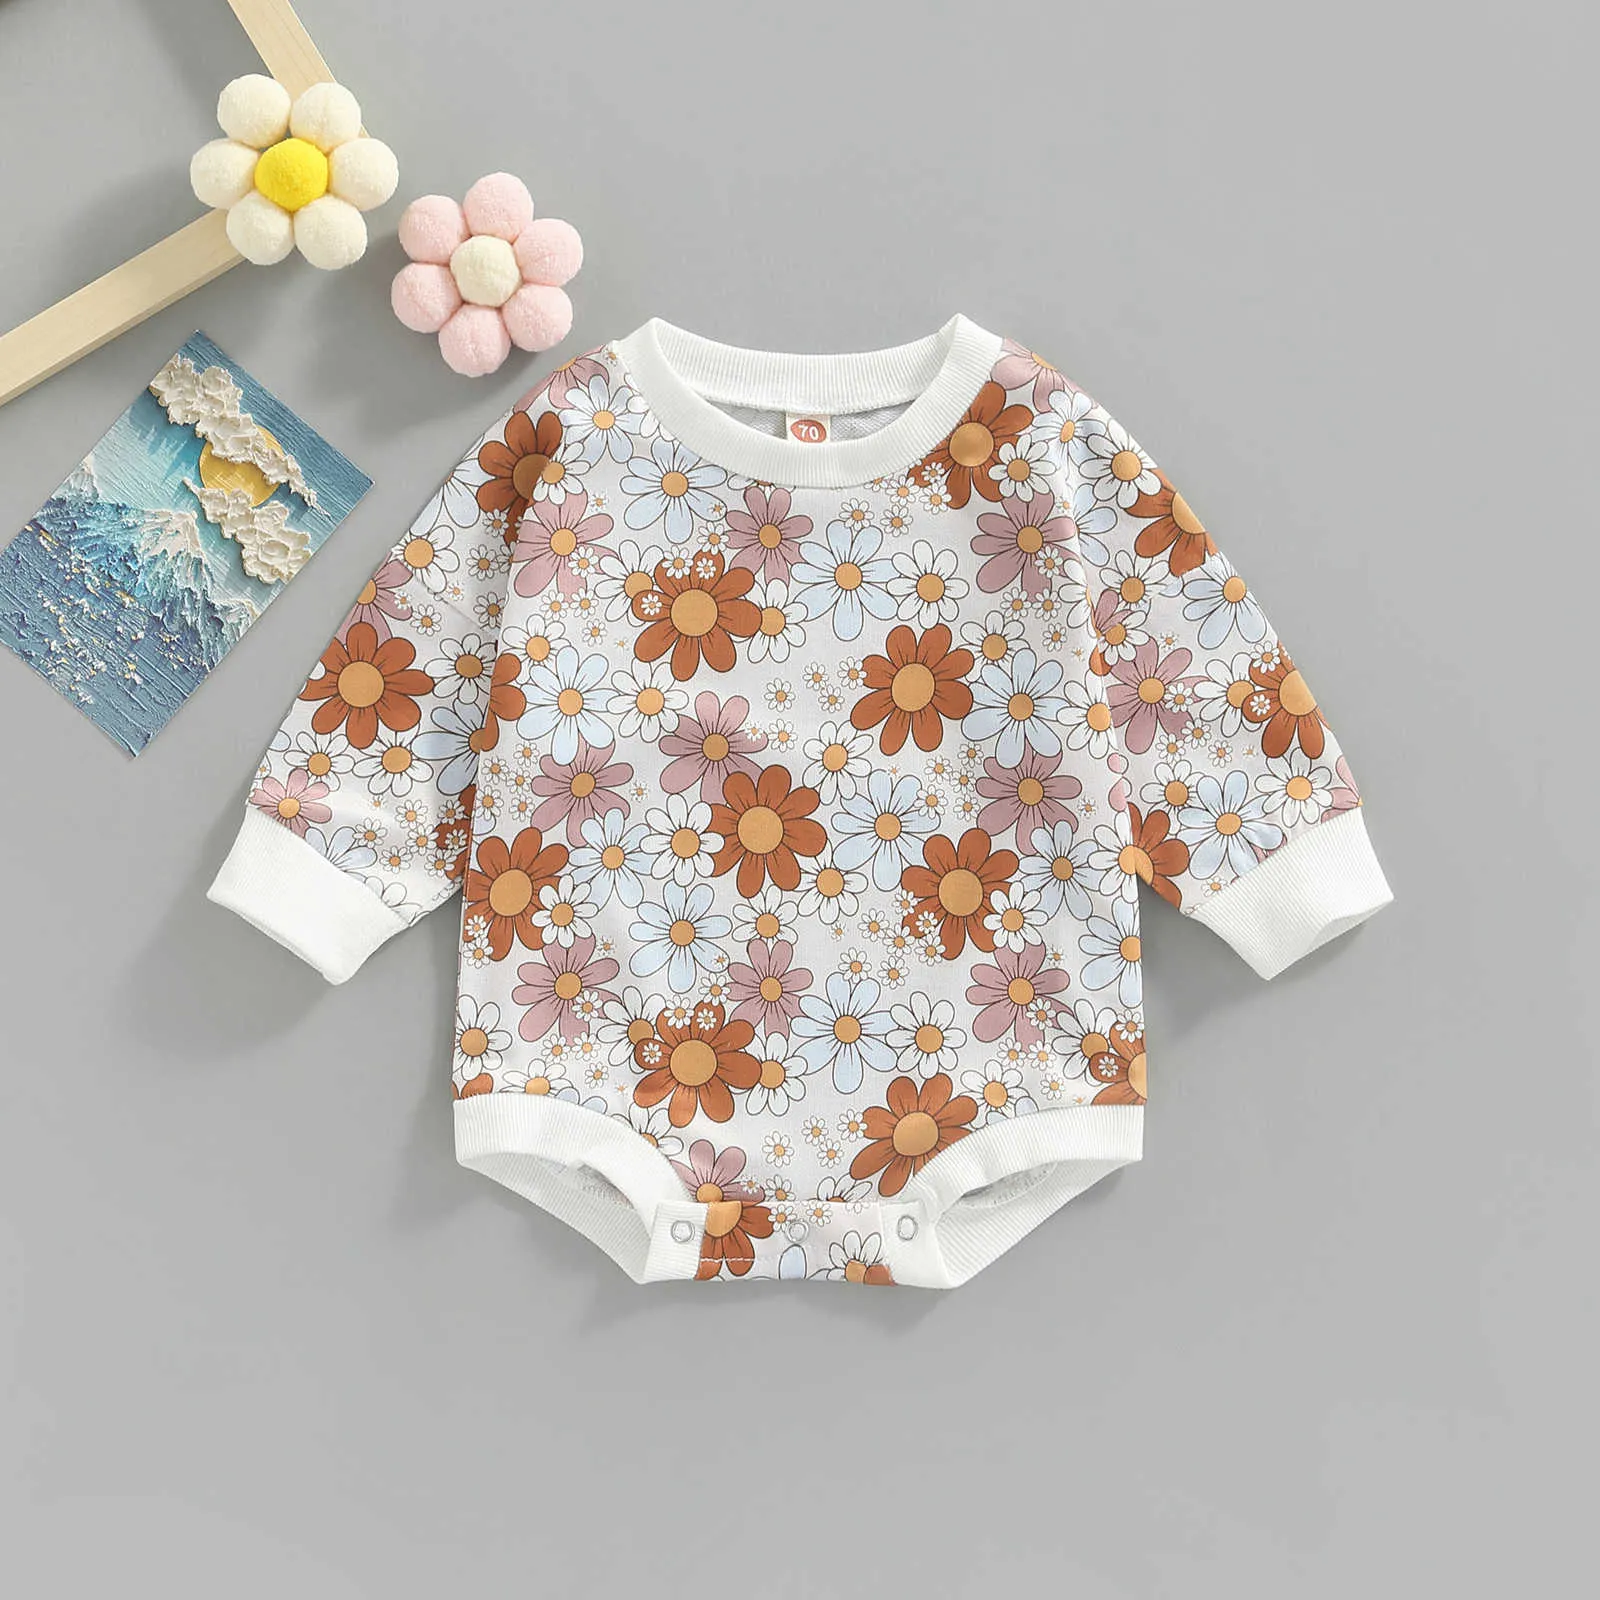 ロンパーズファッションの女の赤ちゃんロンパーズ秋のコットン長い袖の花柄の新生児ベビー服のベビー服ジャンプスーツ02y j220922